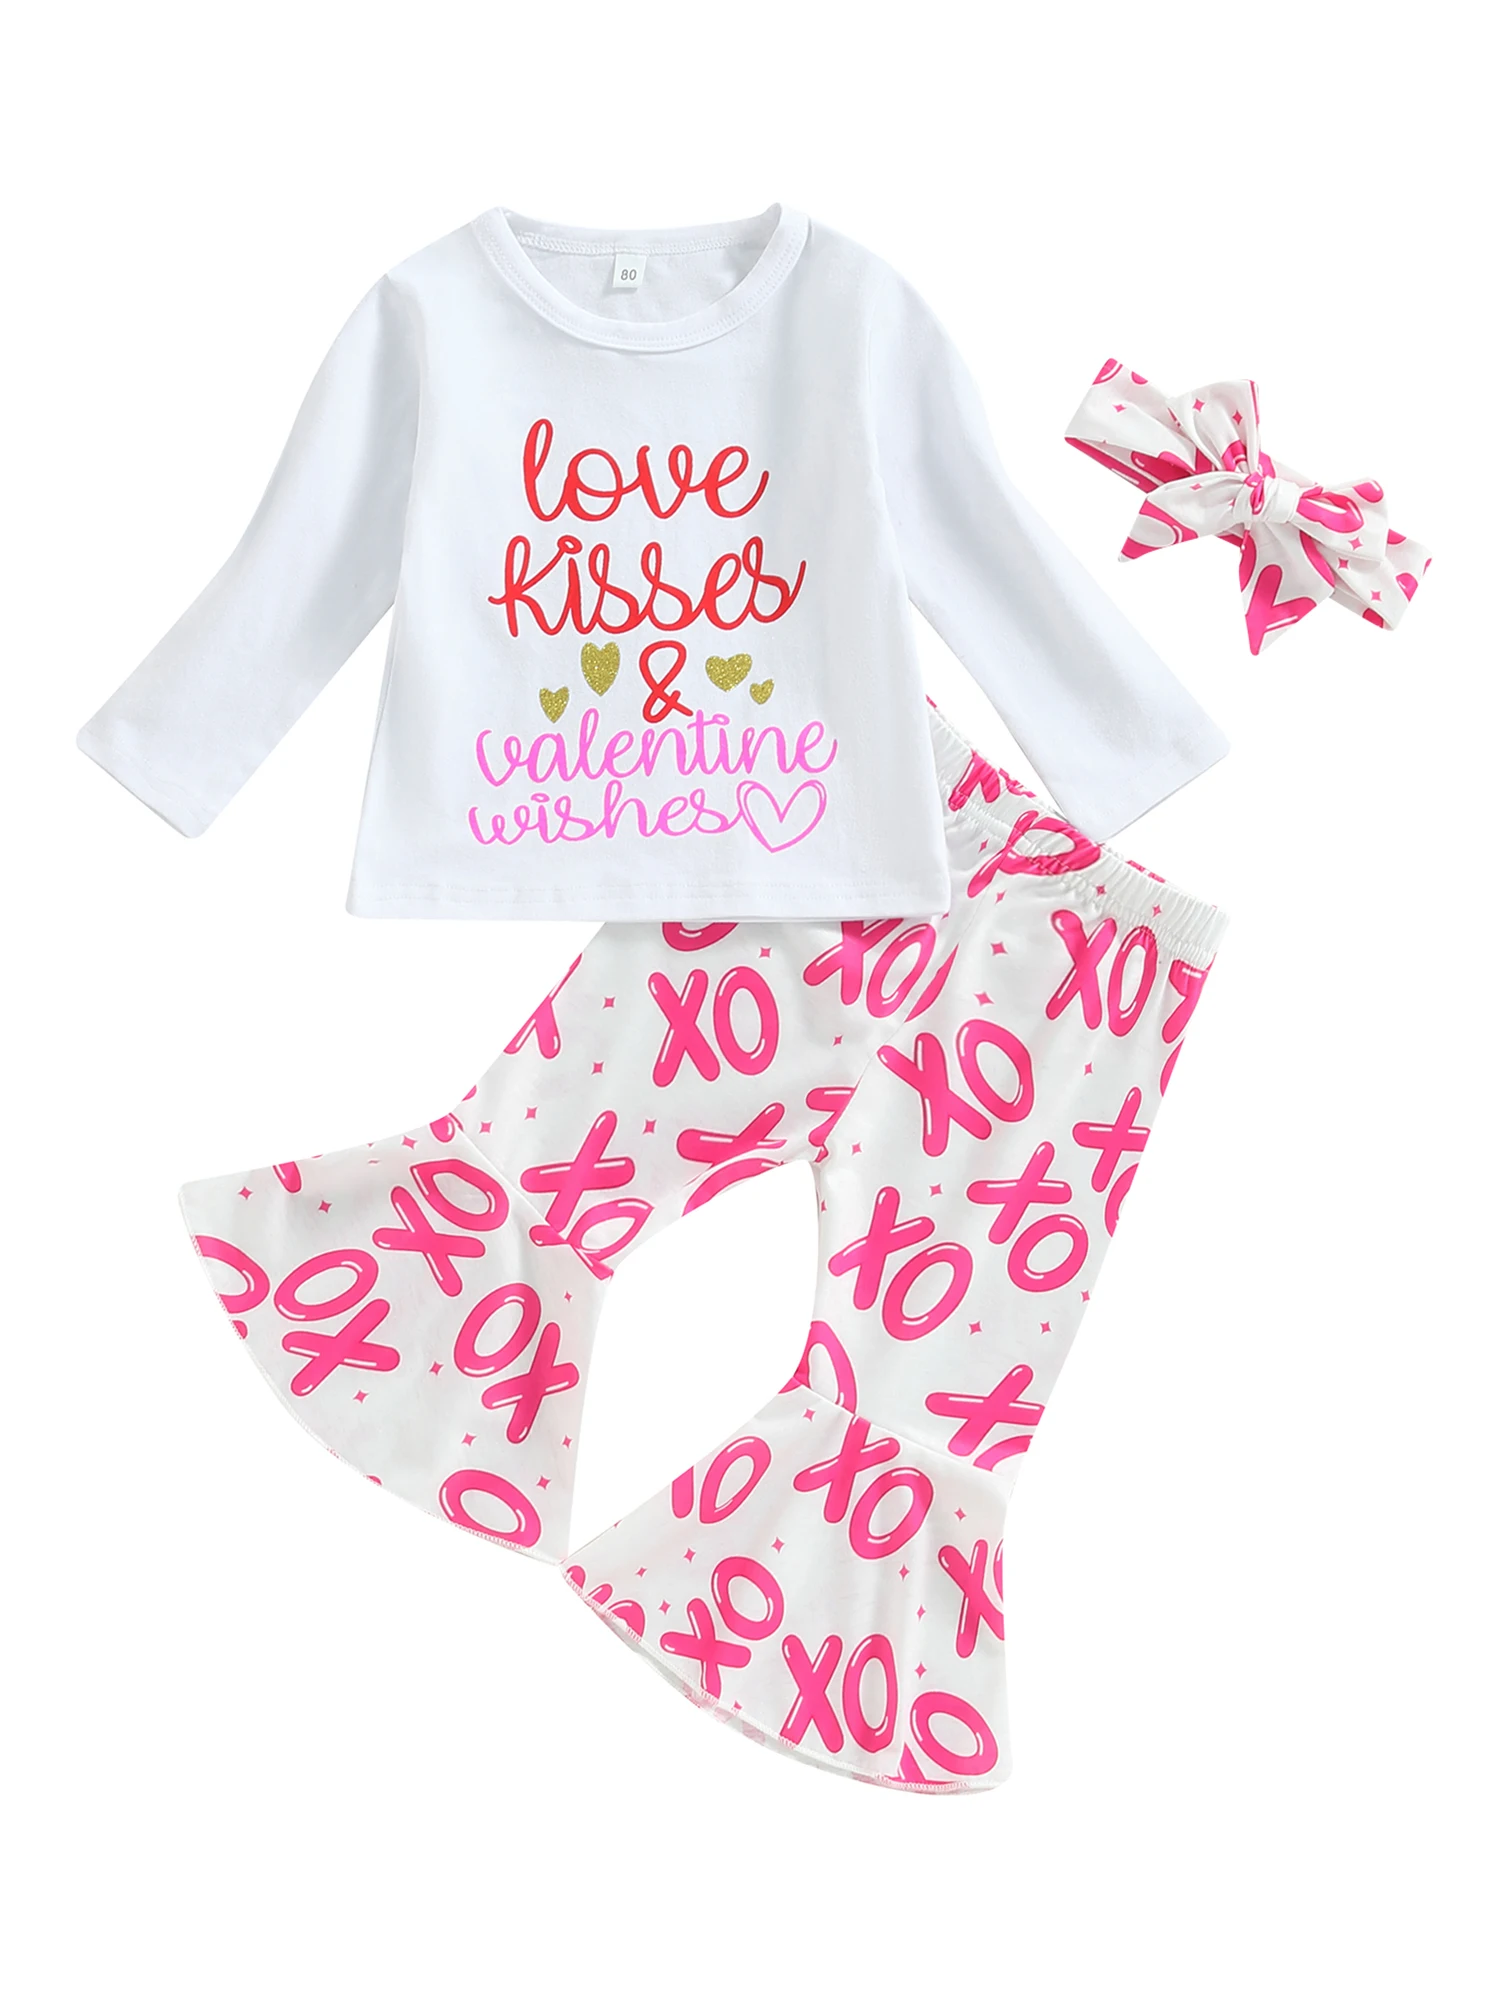 

Наряды для девочек на День святого Валентина 2019 года, топы с длинным рукавом и буквенным принтом, расклешенные брюки, комплект с повязкой на голову